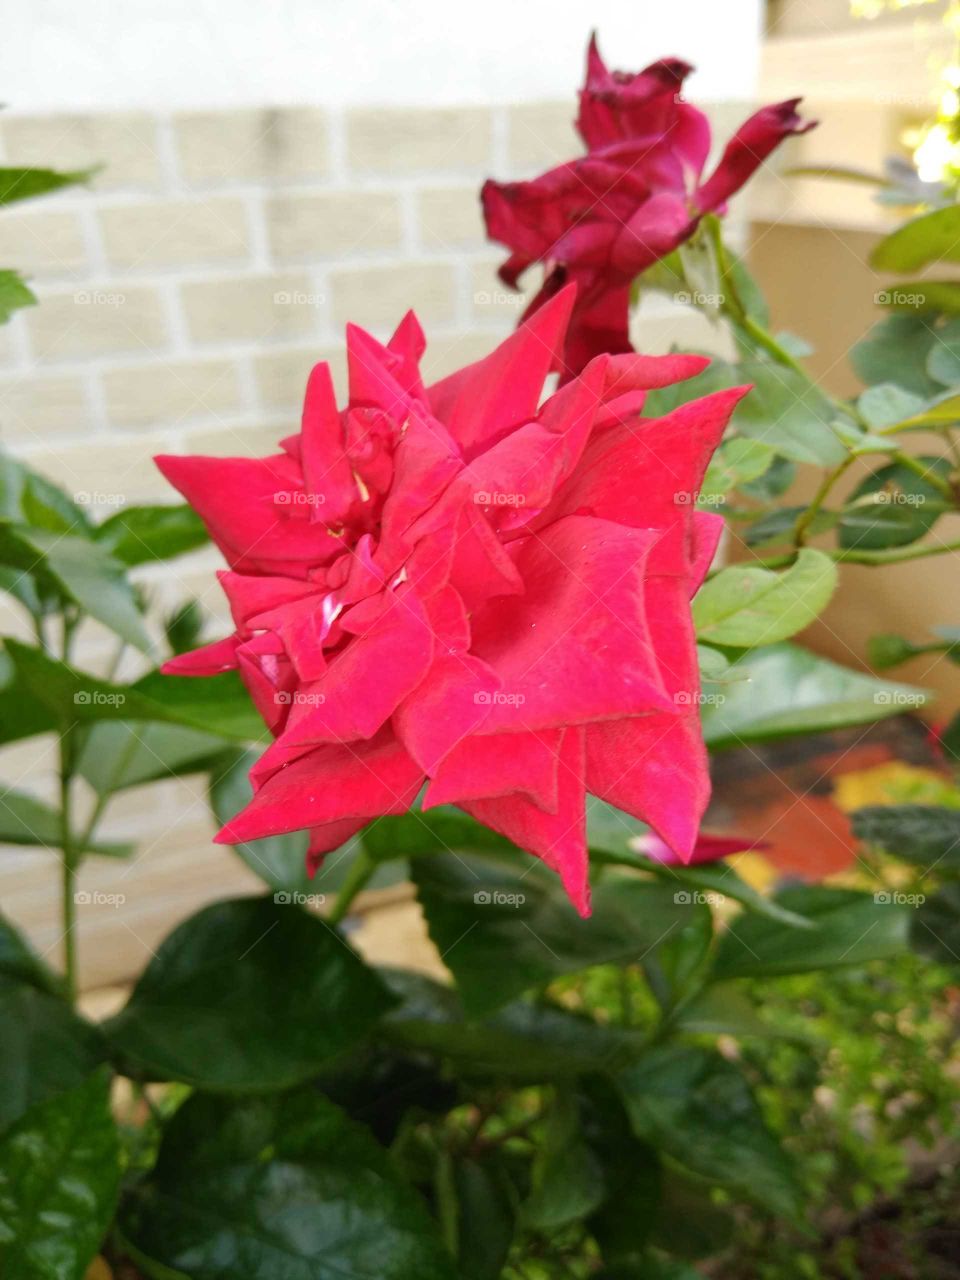 a red rose flower in my garden